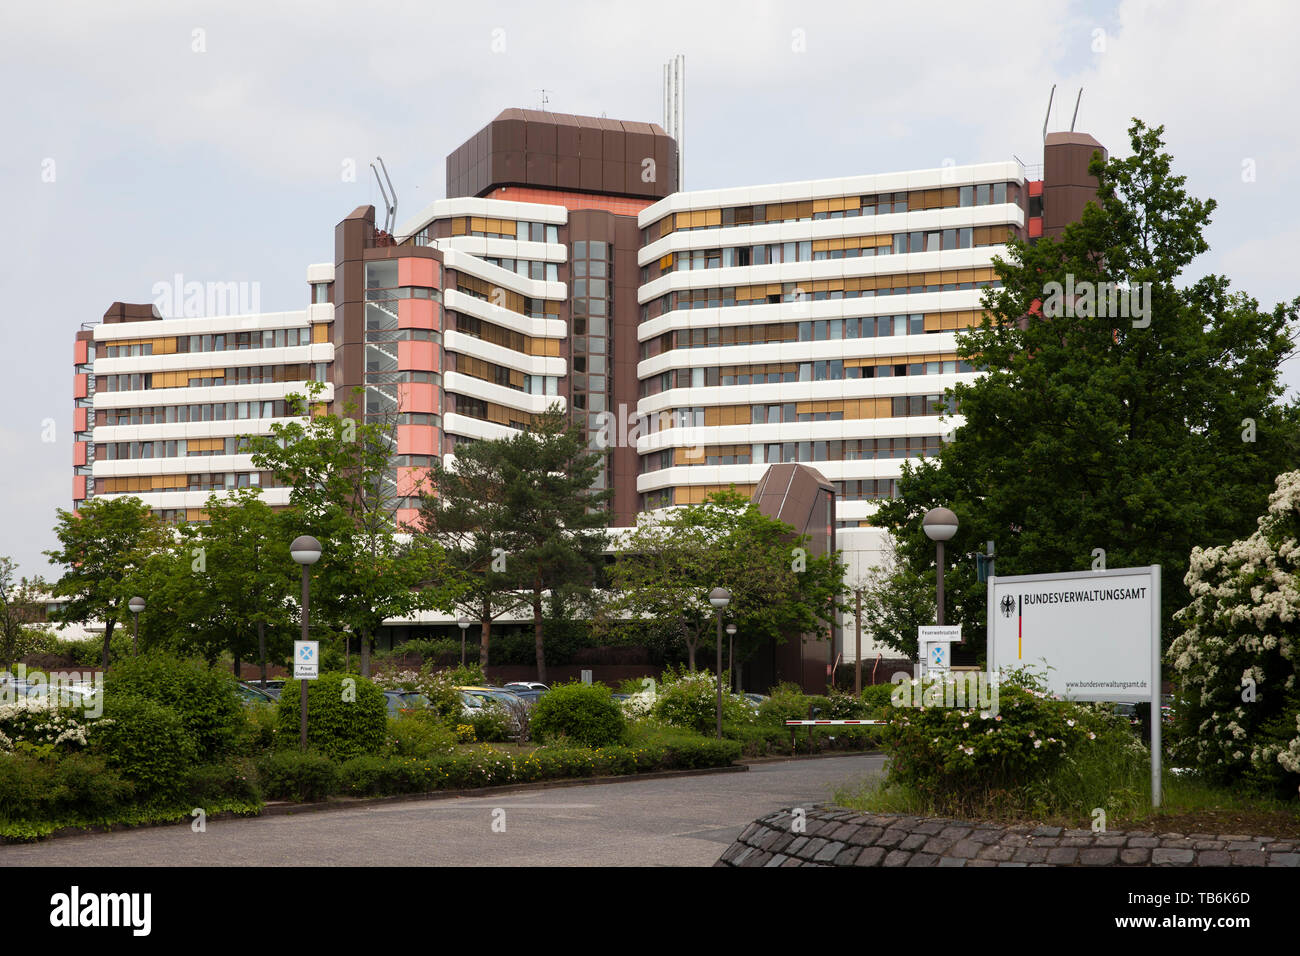 La Oficina Federal de Administración en el distrito Riehl, Colonia, Alemania. das Bundesverwaltungsamt im Stadtteil Riehl, Koeln, Deutschland. Foto de stock